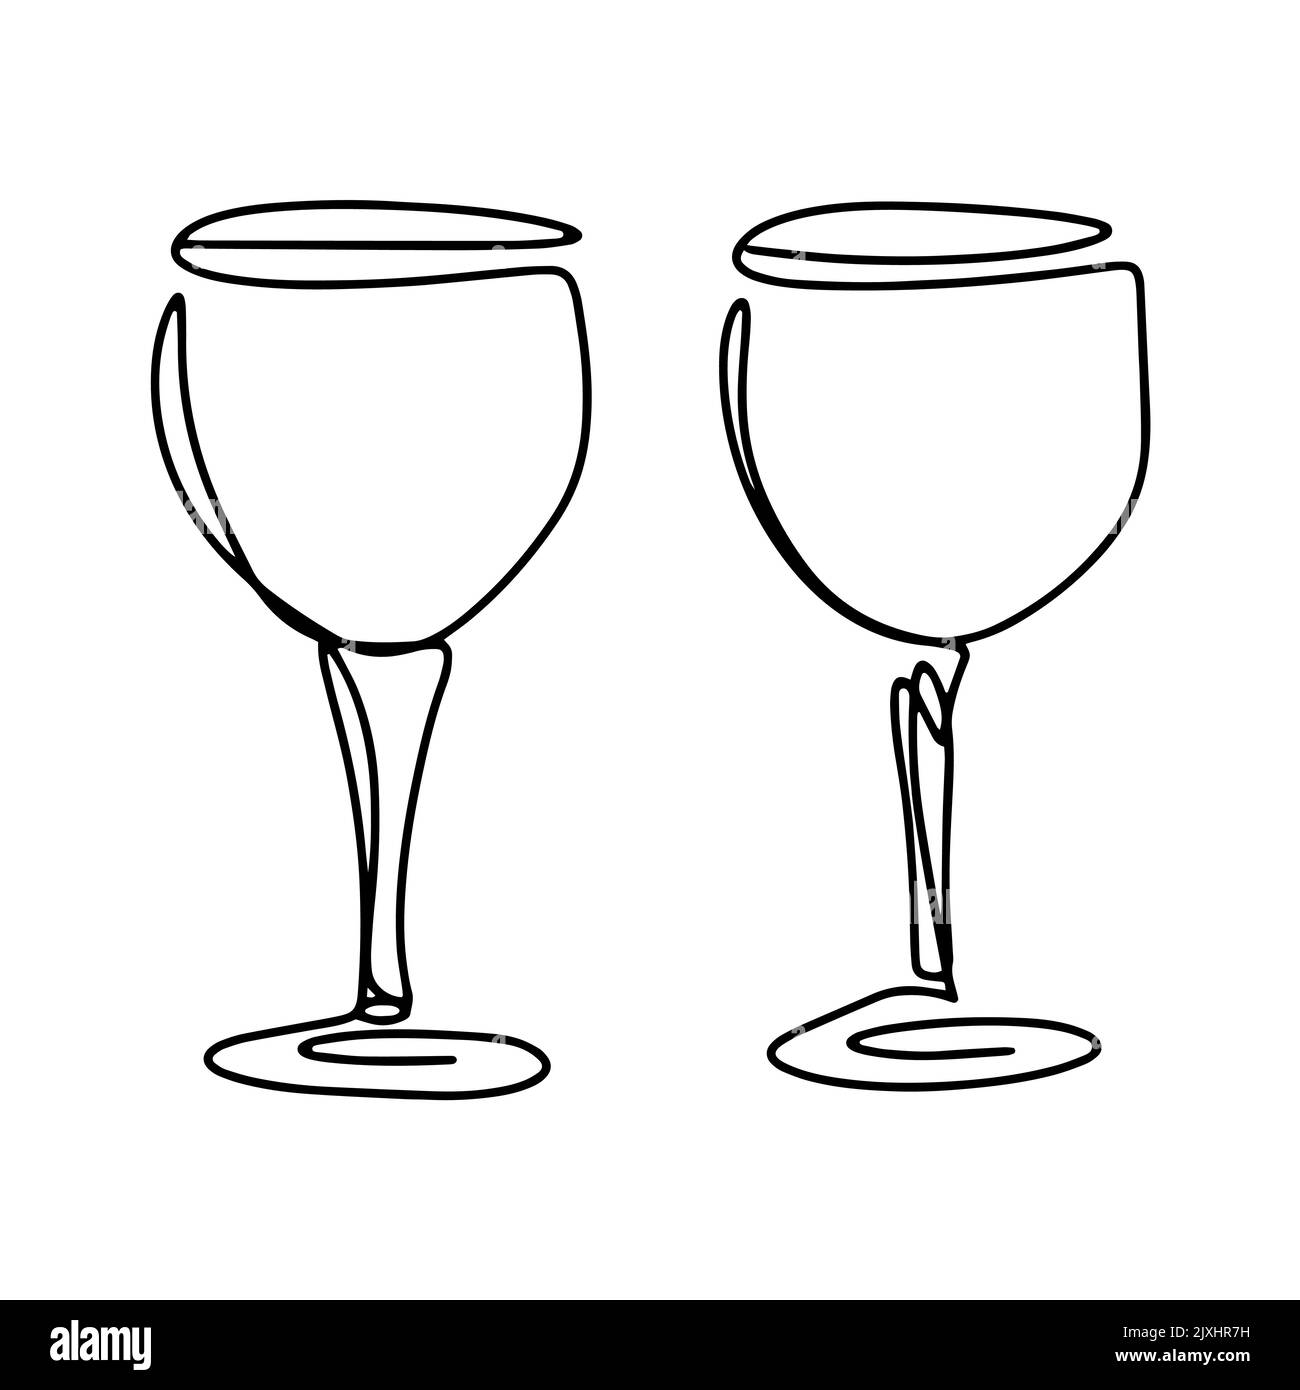 Pair of wine glasses isolated line art vector. Glasses on legs for alcoholic drinks. Utensils for drinking black outline on white background Stock Vector